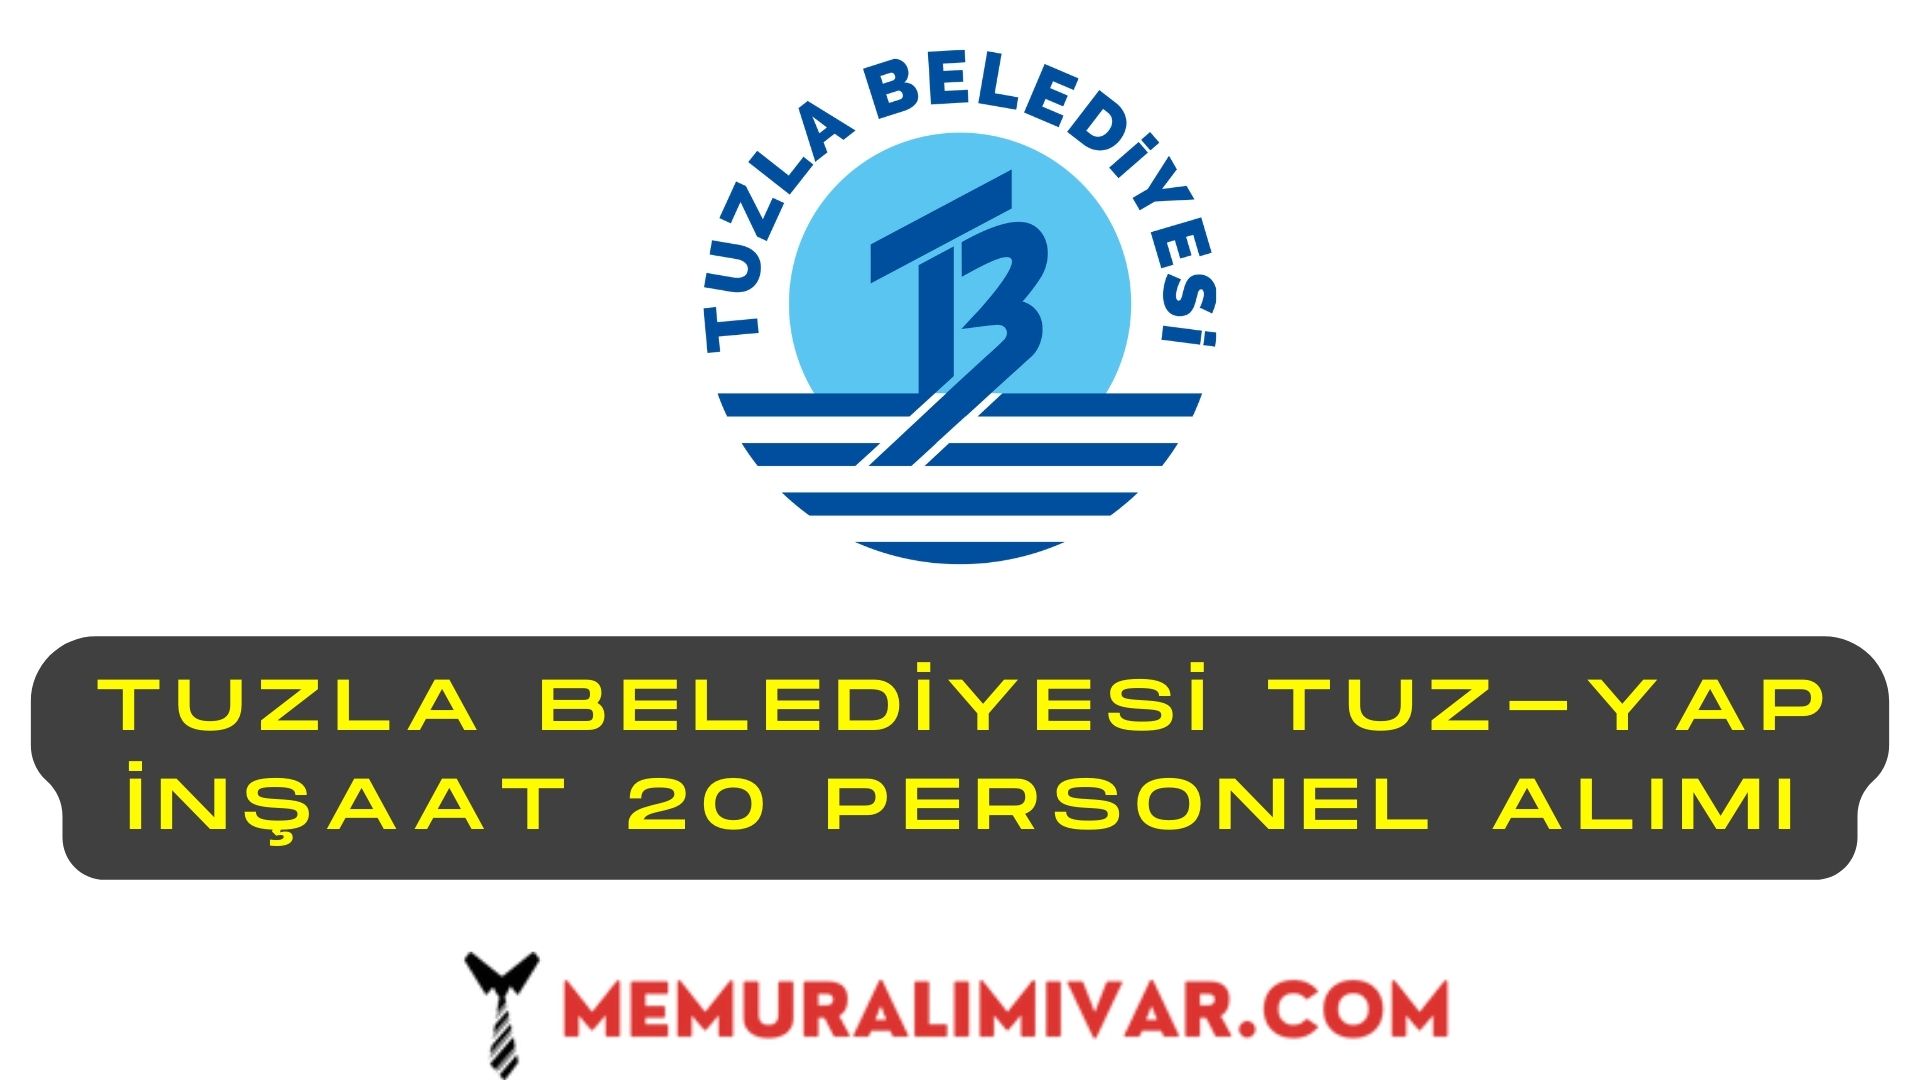 Tuzla Belediyesi Tuz-Yap İnşaat 20 Personel Alımı İş Başvuru Sayfası